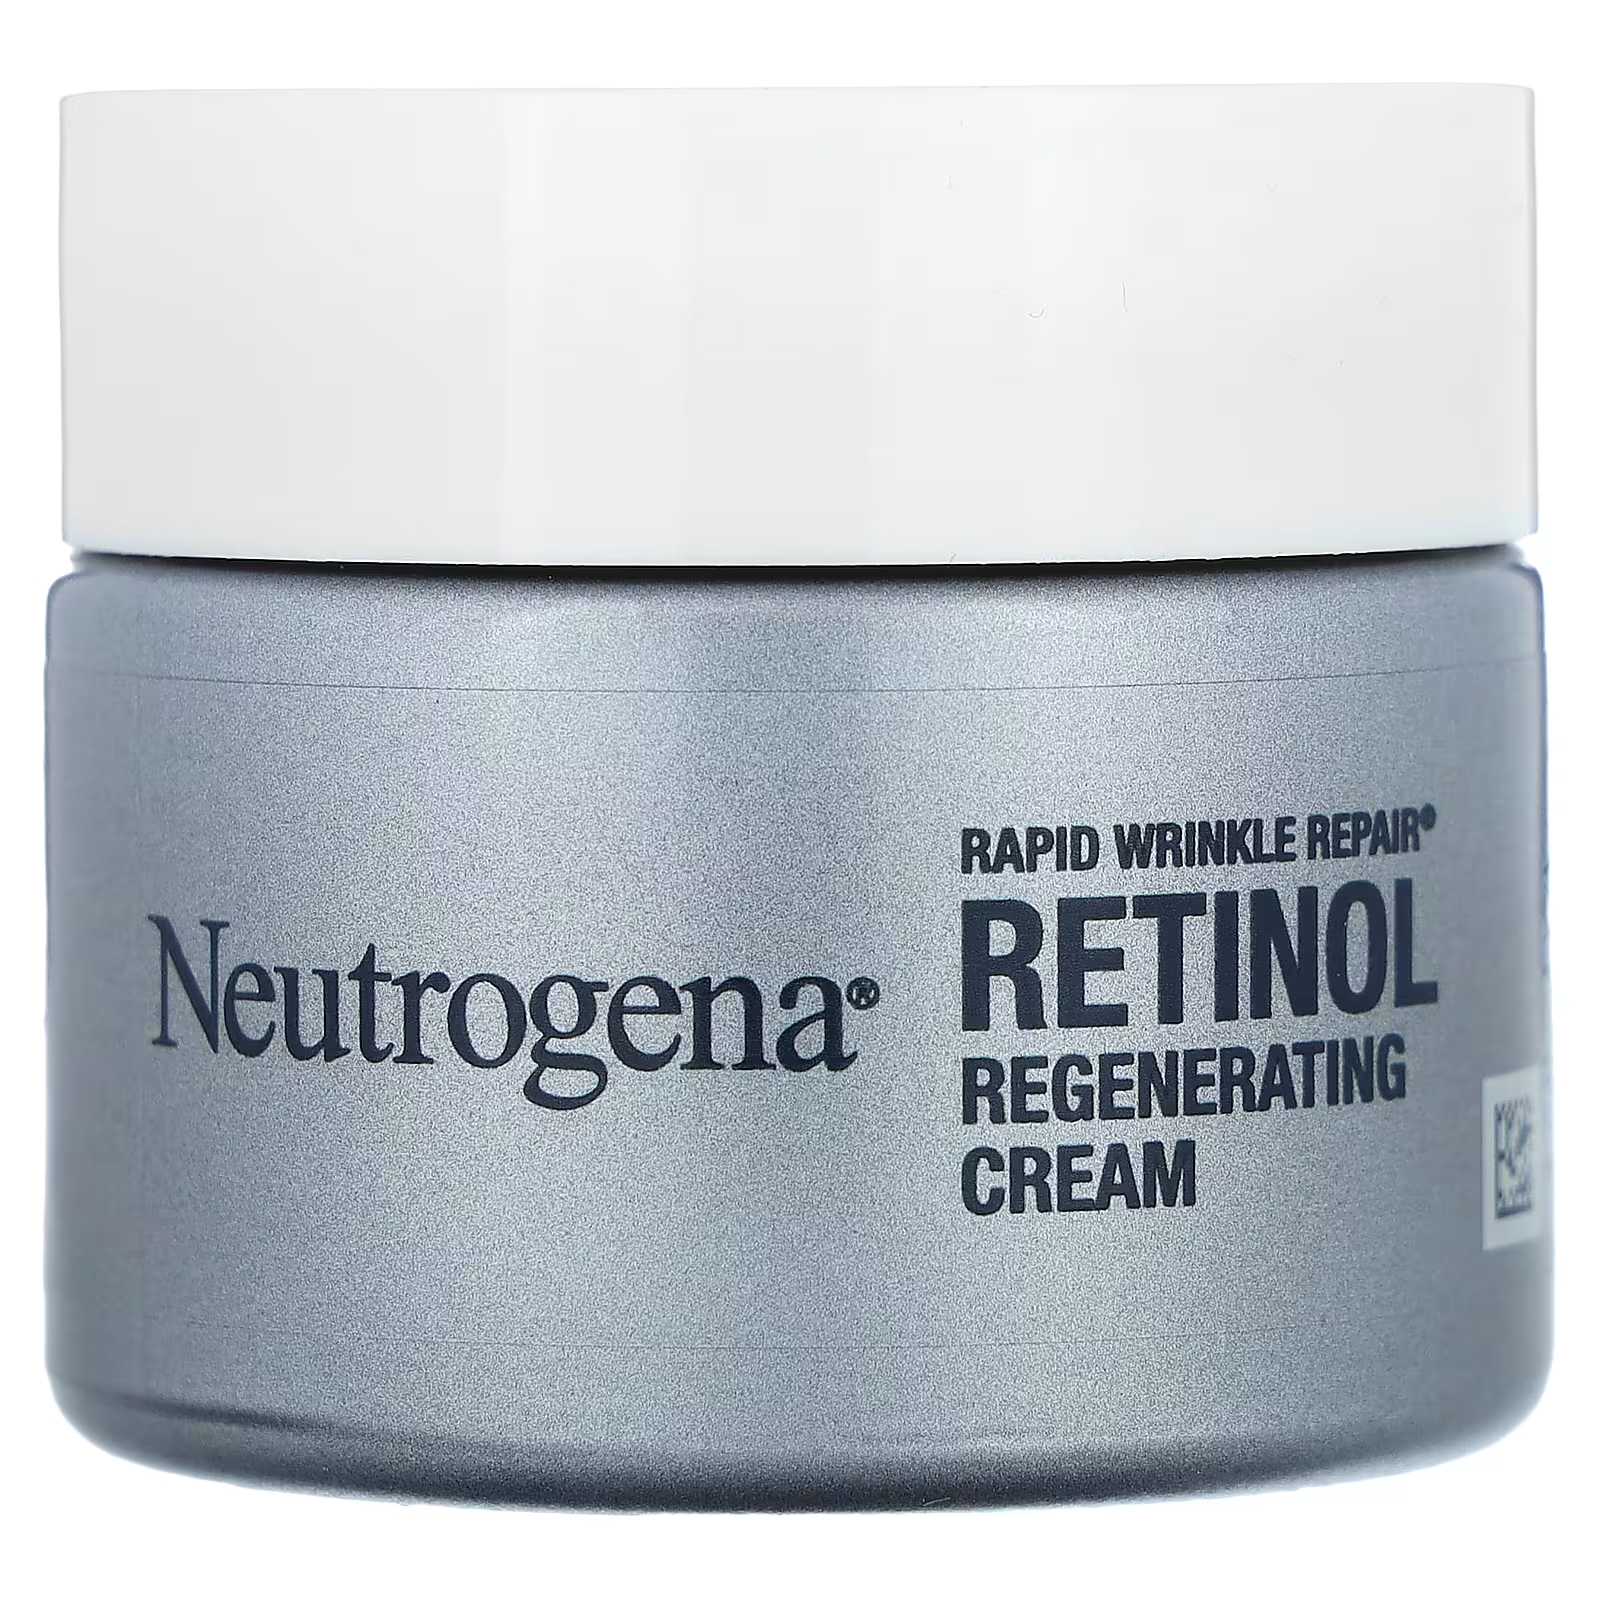 Крем регенерирующий Neutrogena Rapid Wrinkle Repair с ретинолом, 48 г neutrogena rapid wrinkle repair восстанавливающий крем с ретинолом без отдушек 48 г 1 7 унции